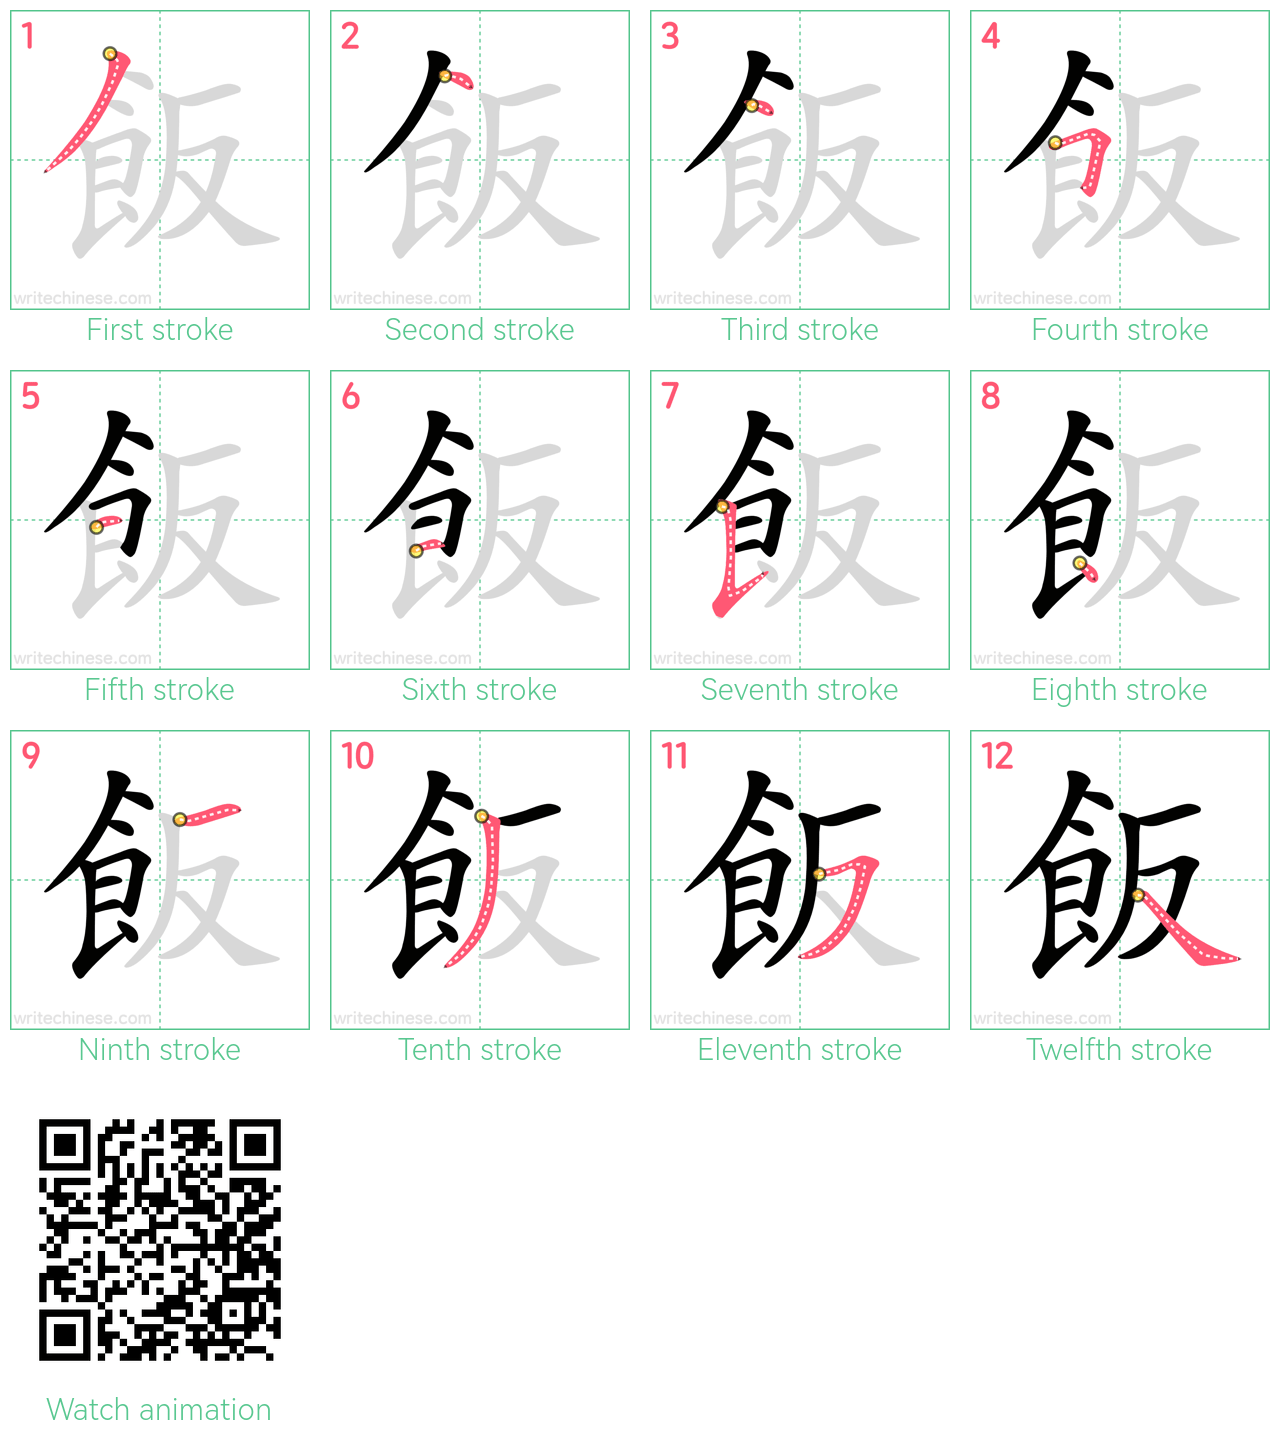 飯 step-by-step stroke order diagrams